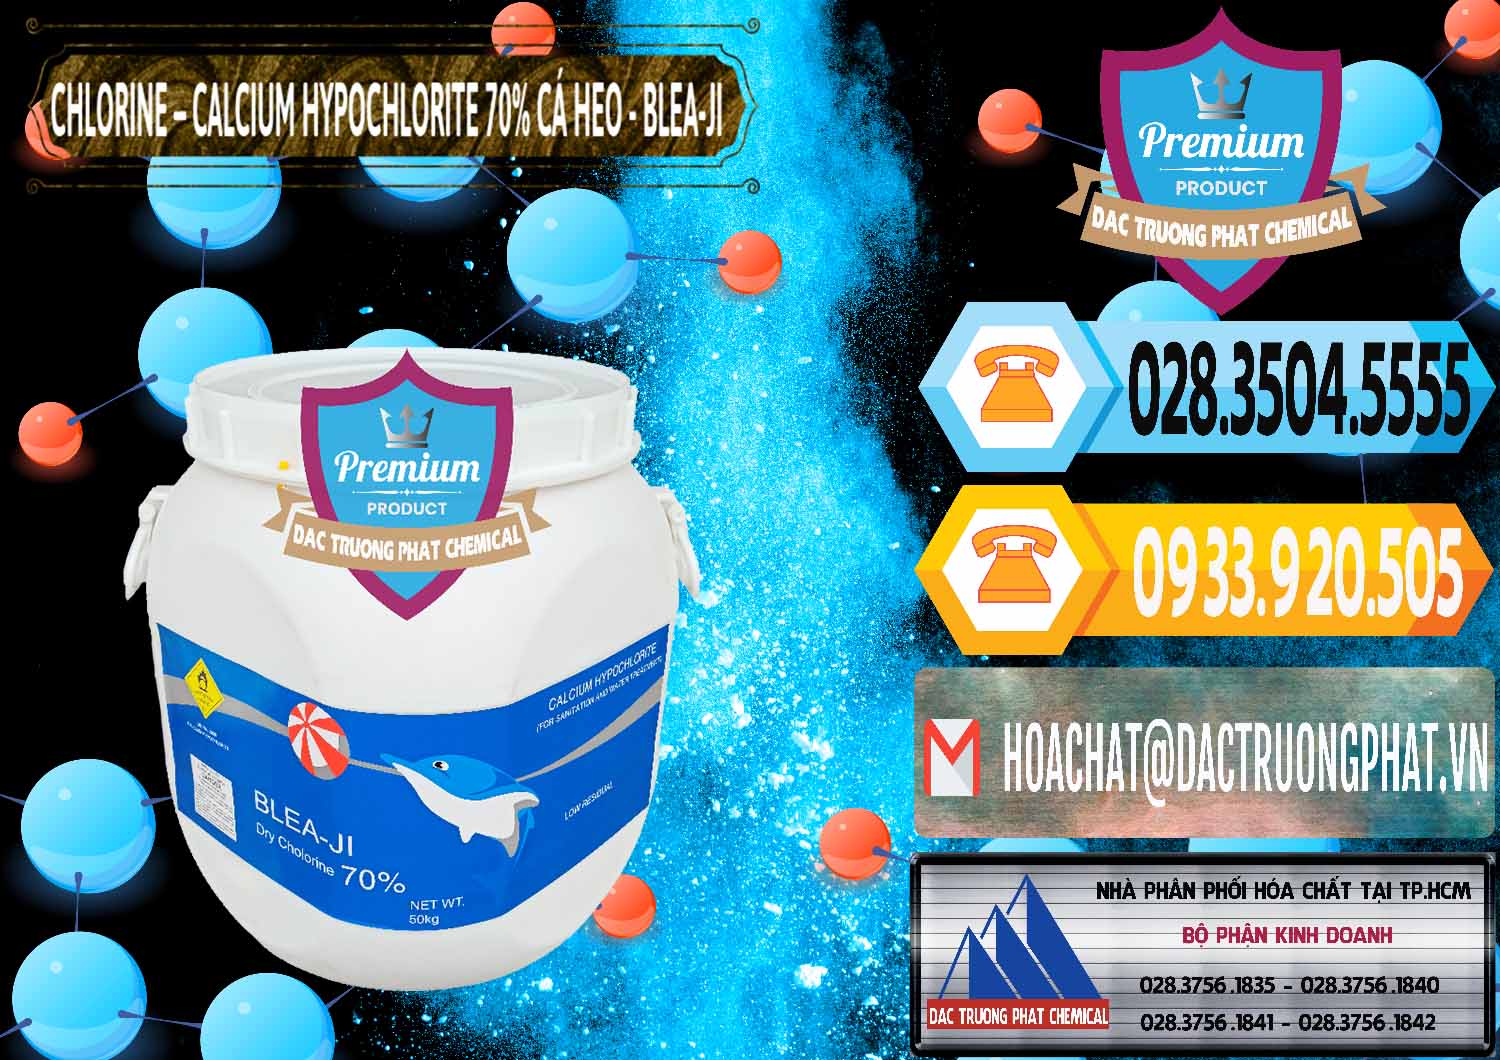 Đơn vị chuyên nhập khẩu - bán Clorin - Chlorine Cá Heo 70% Blea-Ji Trung Quốc China - 0056 - Công ty bán _ cung cấp hóa chất tại TP.HCM - hoachattayrua.net